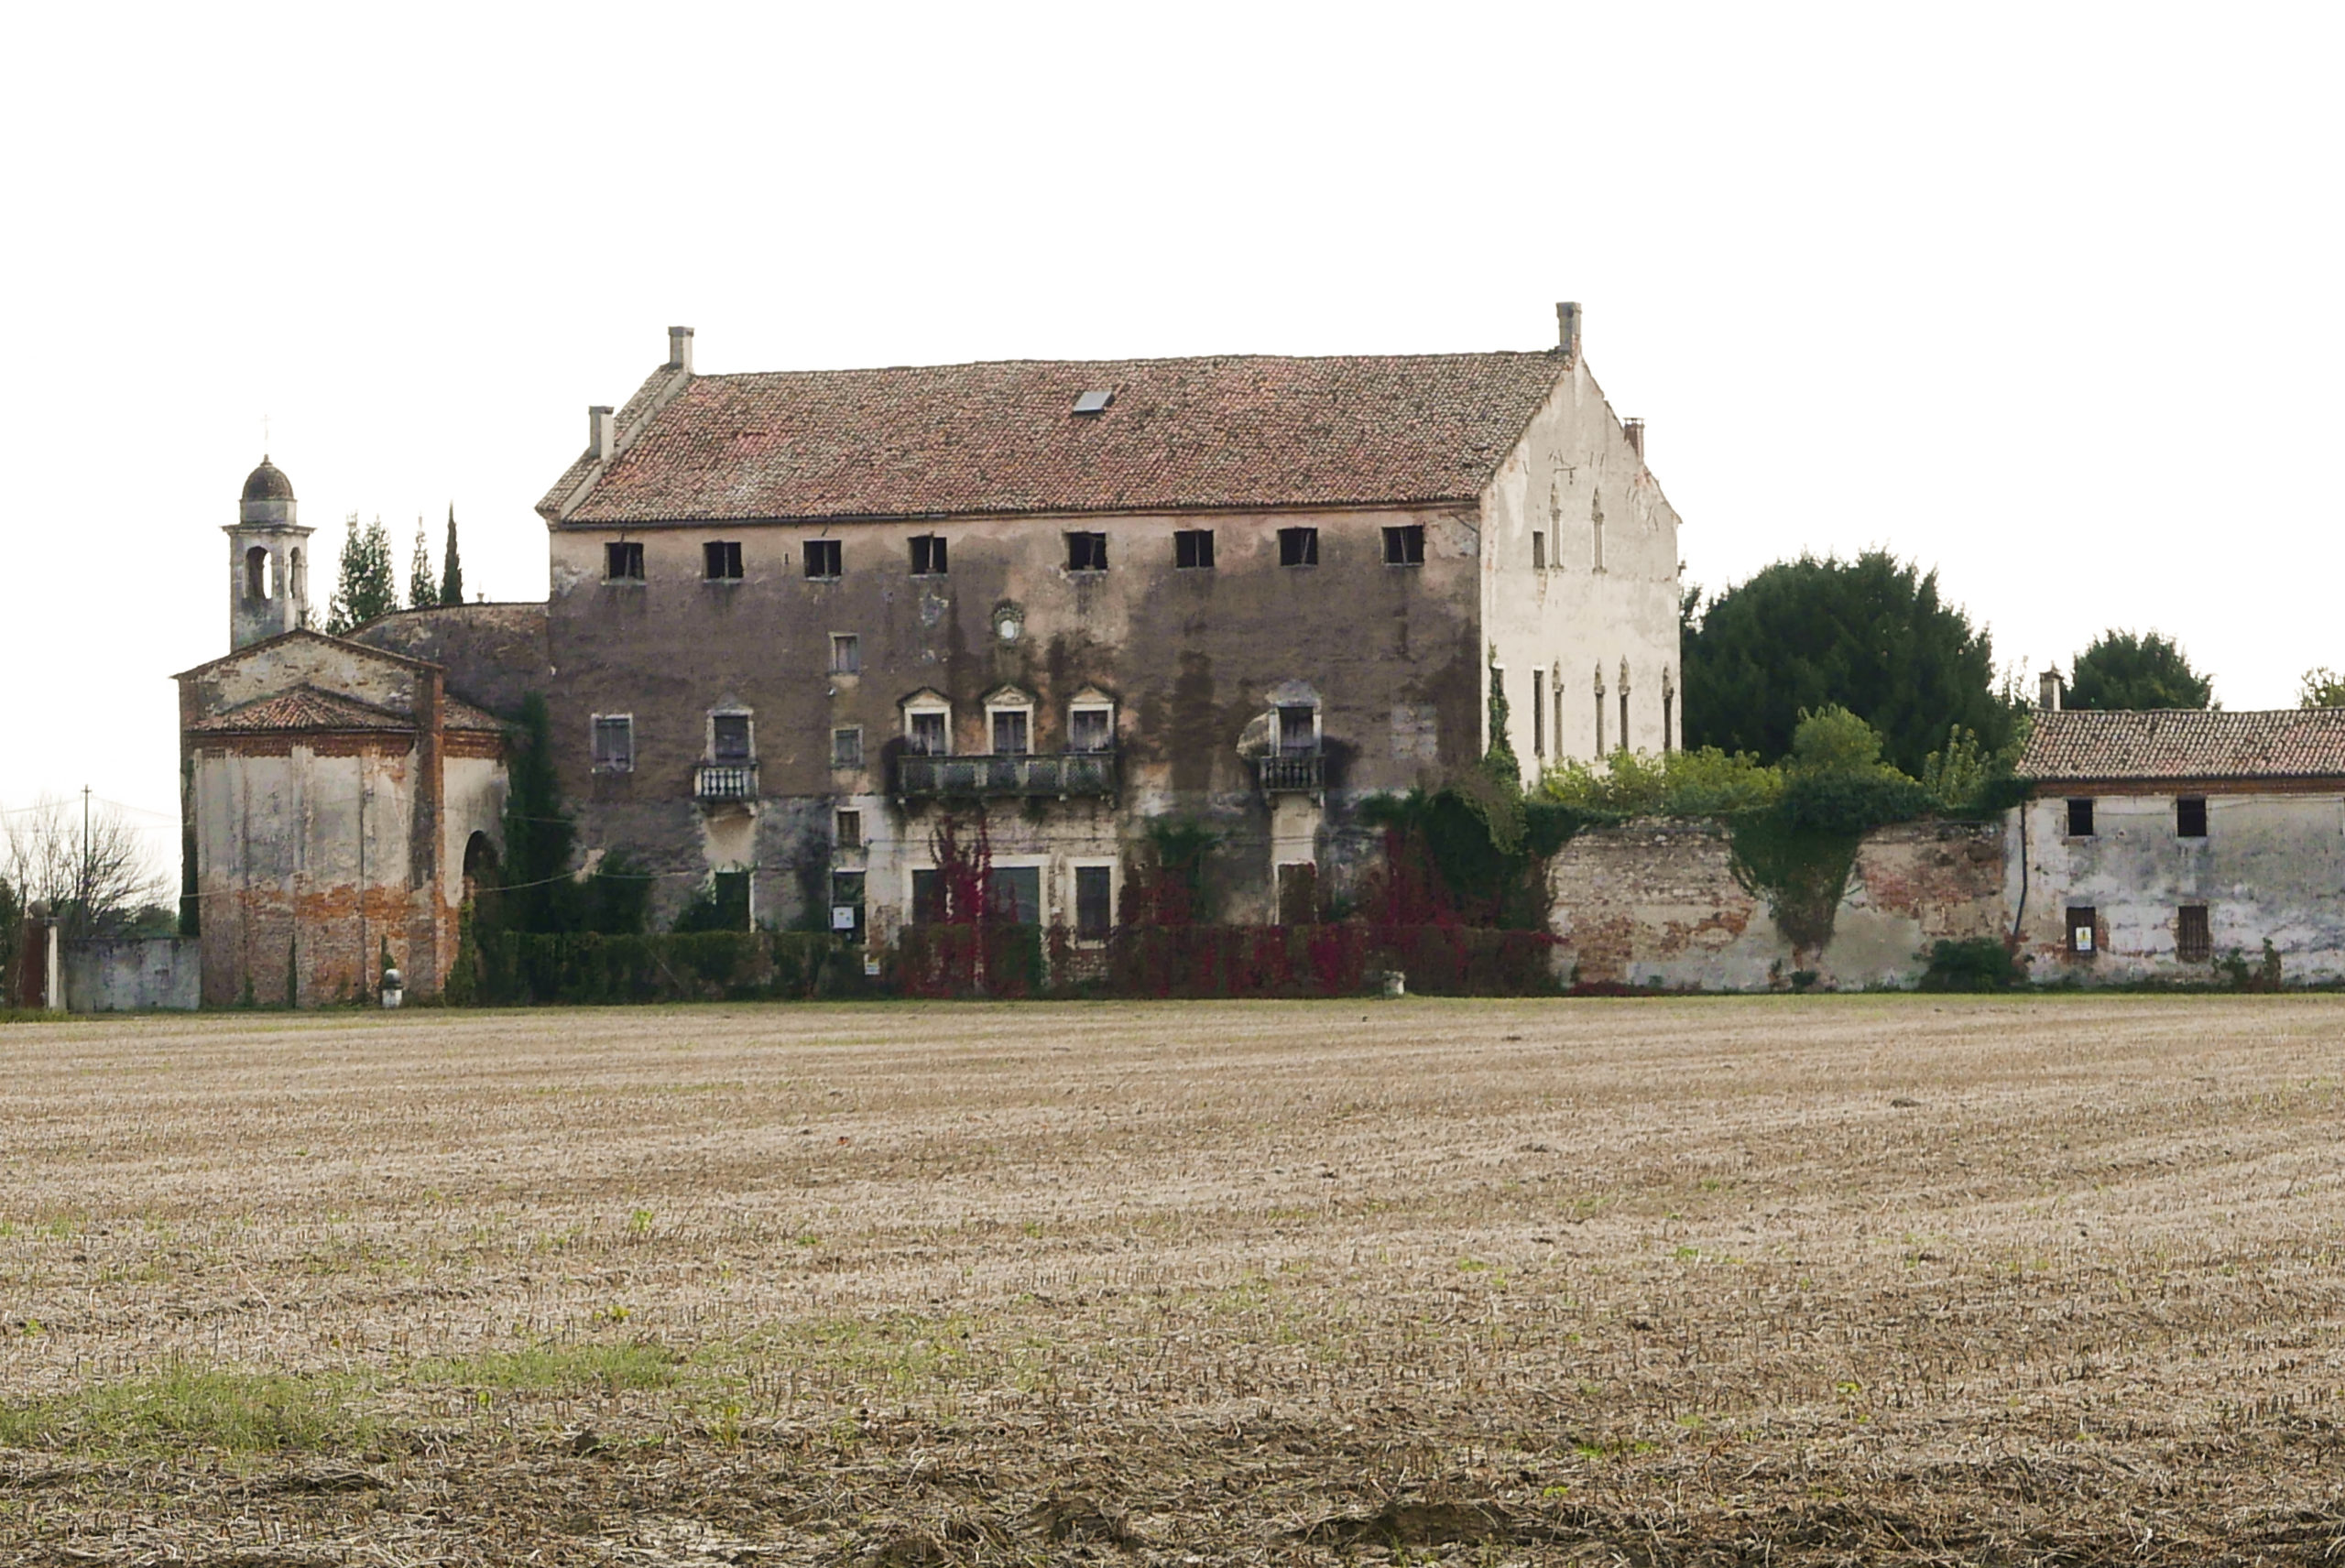 Villa Trissino Muttoni, detta Ca' Impenta, risale alla metà del Quattrocento